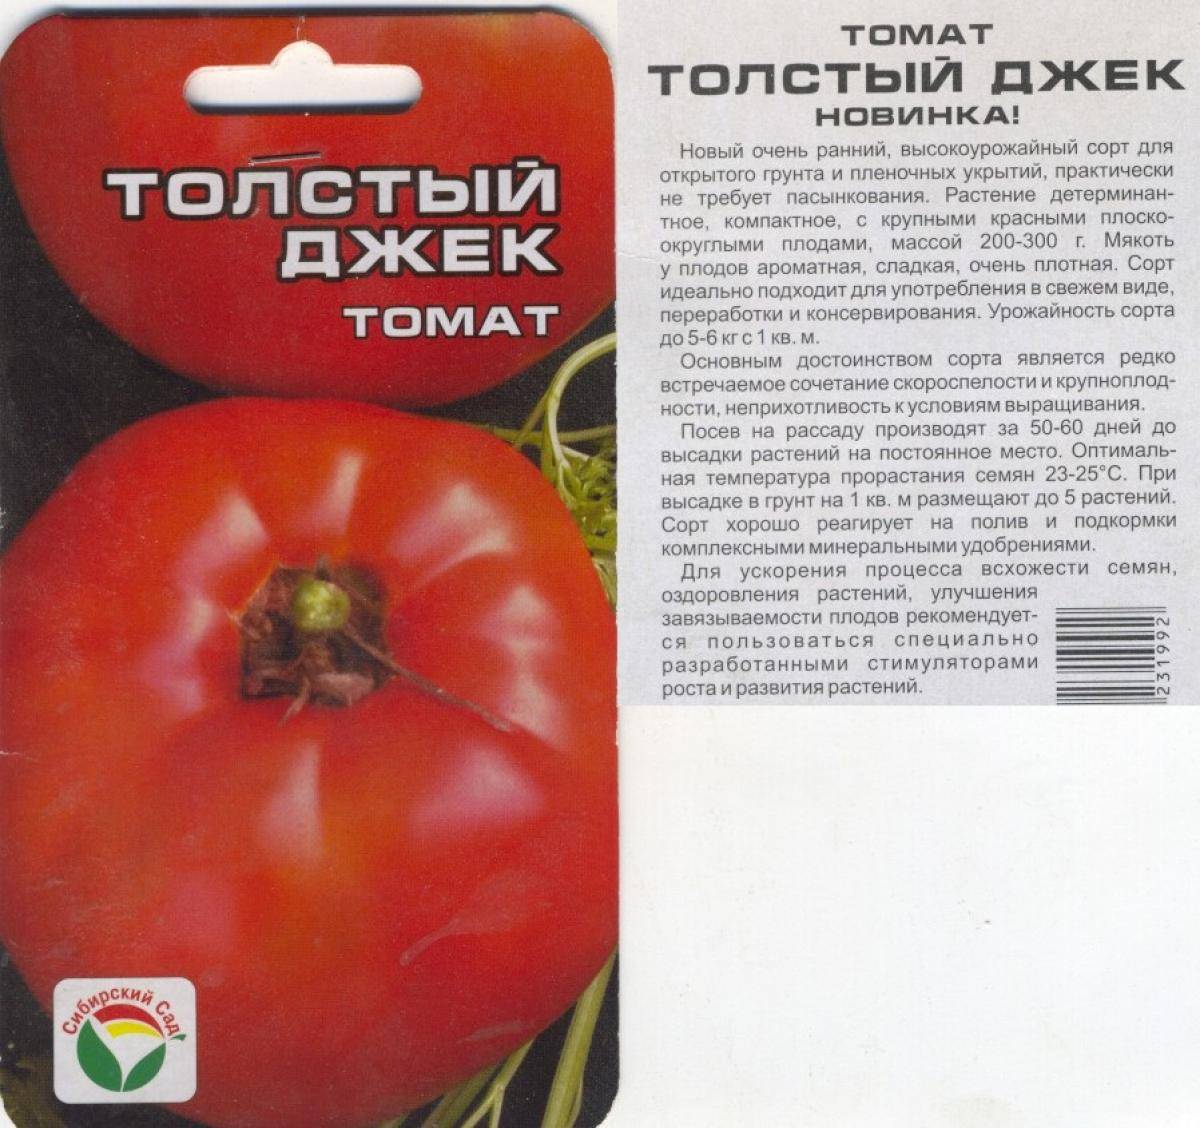 Толстушка — описание и особенности выращивания томата